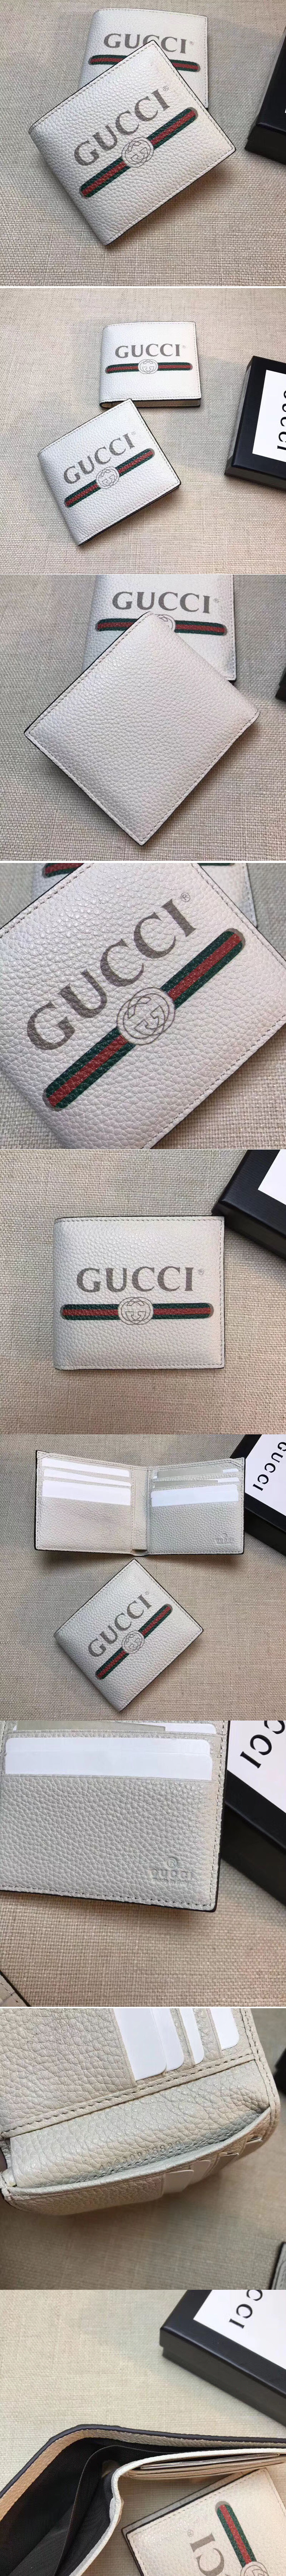 Replica Gucci 496309 logo leather bi-fold wallet White